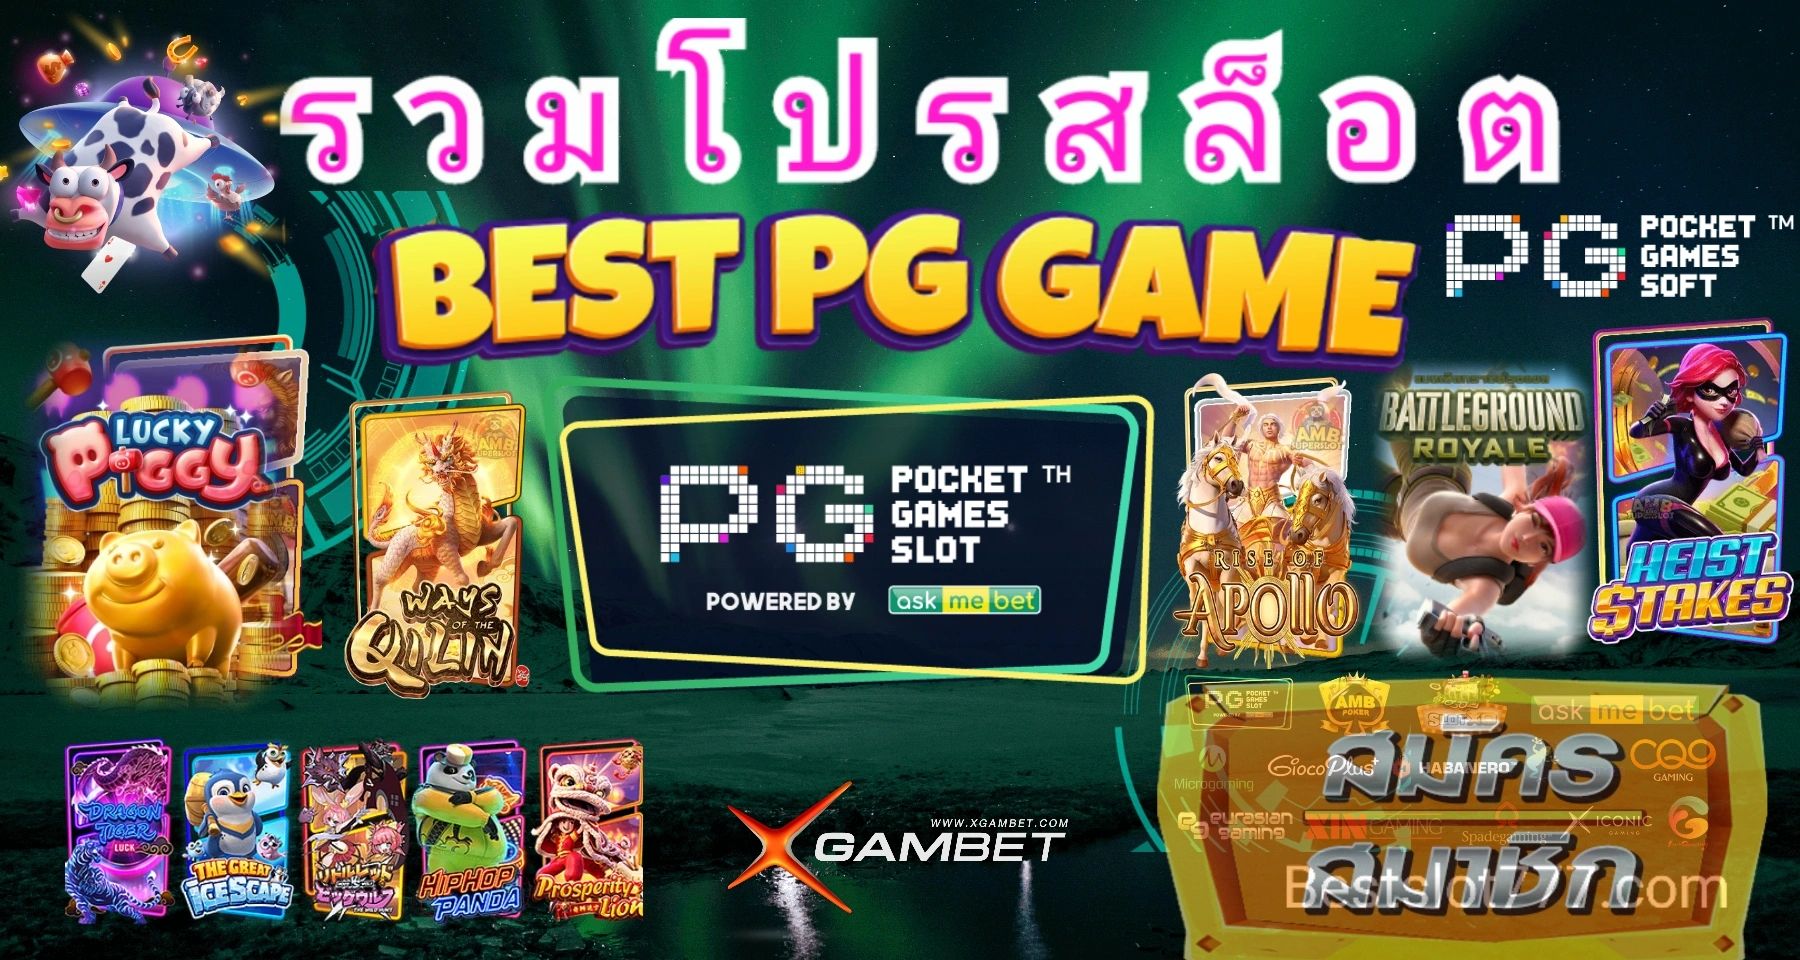 รวมโปรสล็อต โปรสล็อต PG slot ใหม่ล่าสุด ฝาก10รับ100
รวมค่ายpg ออโต้
pgslot.co
PGSlot ค่ายเกมอันดับหน